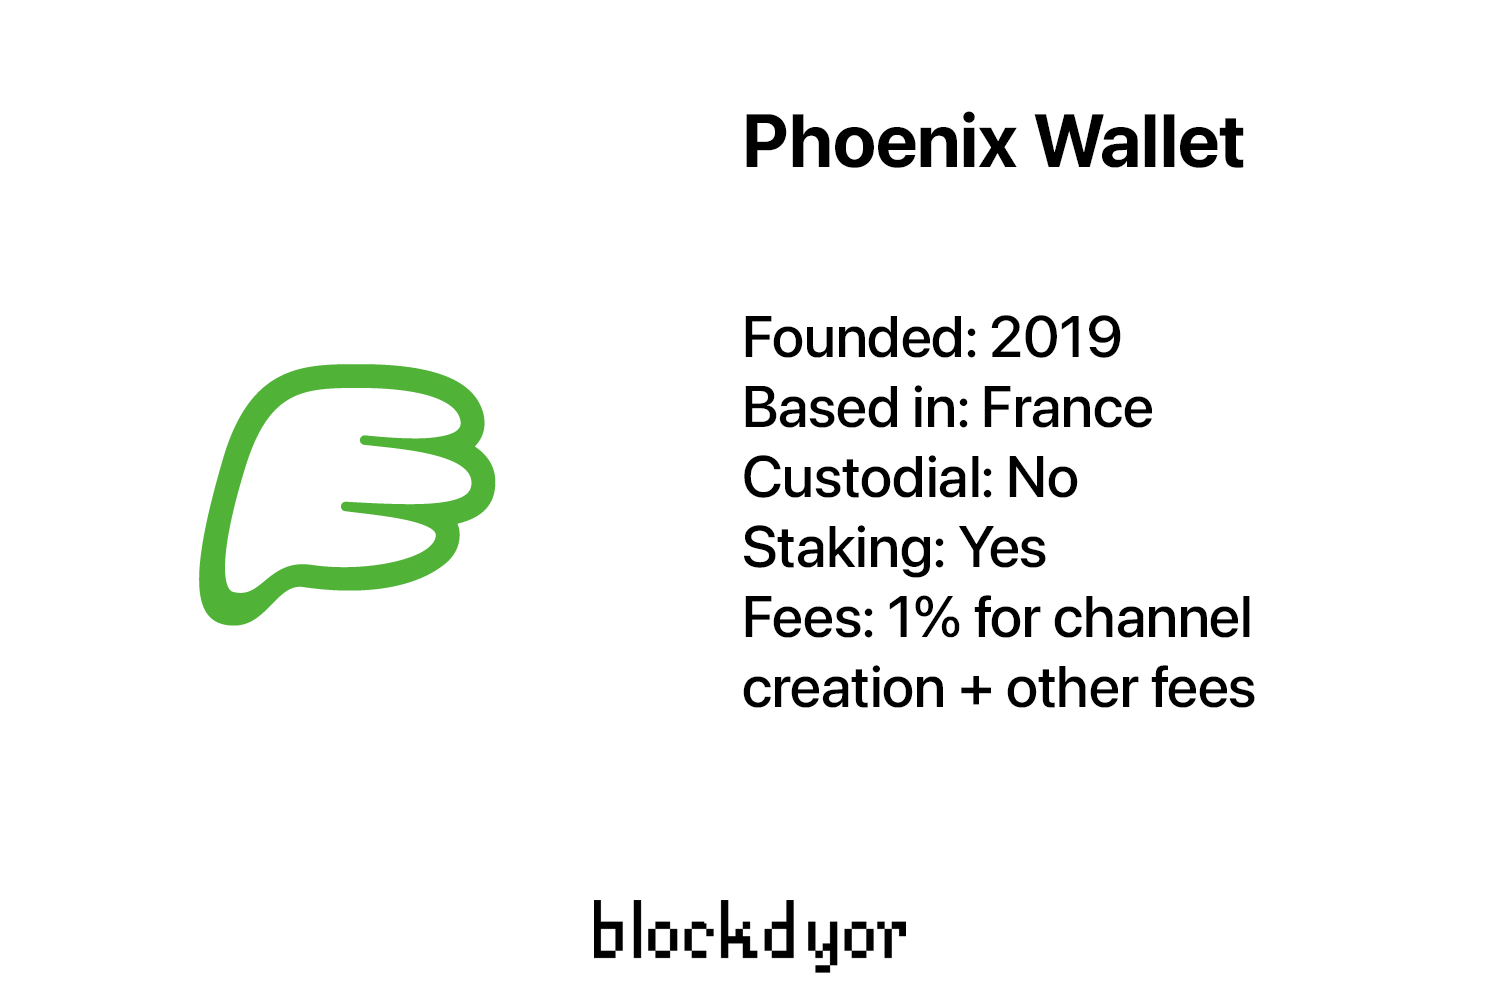 Phoenix Wallet Overview